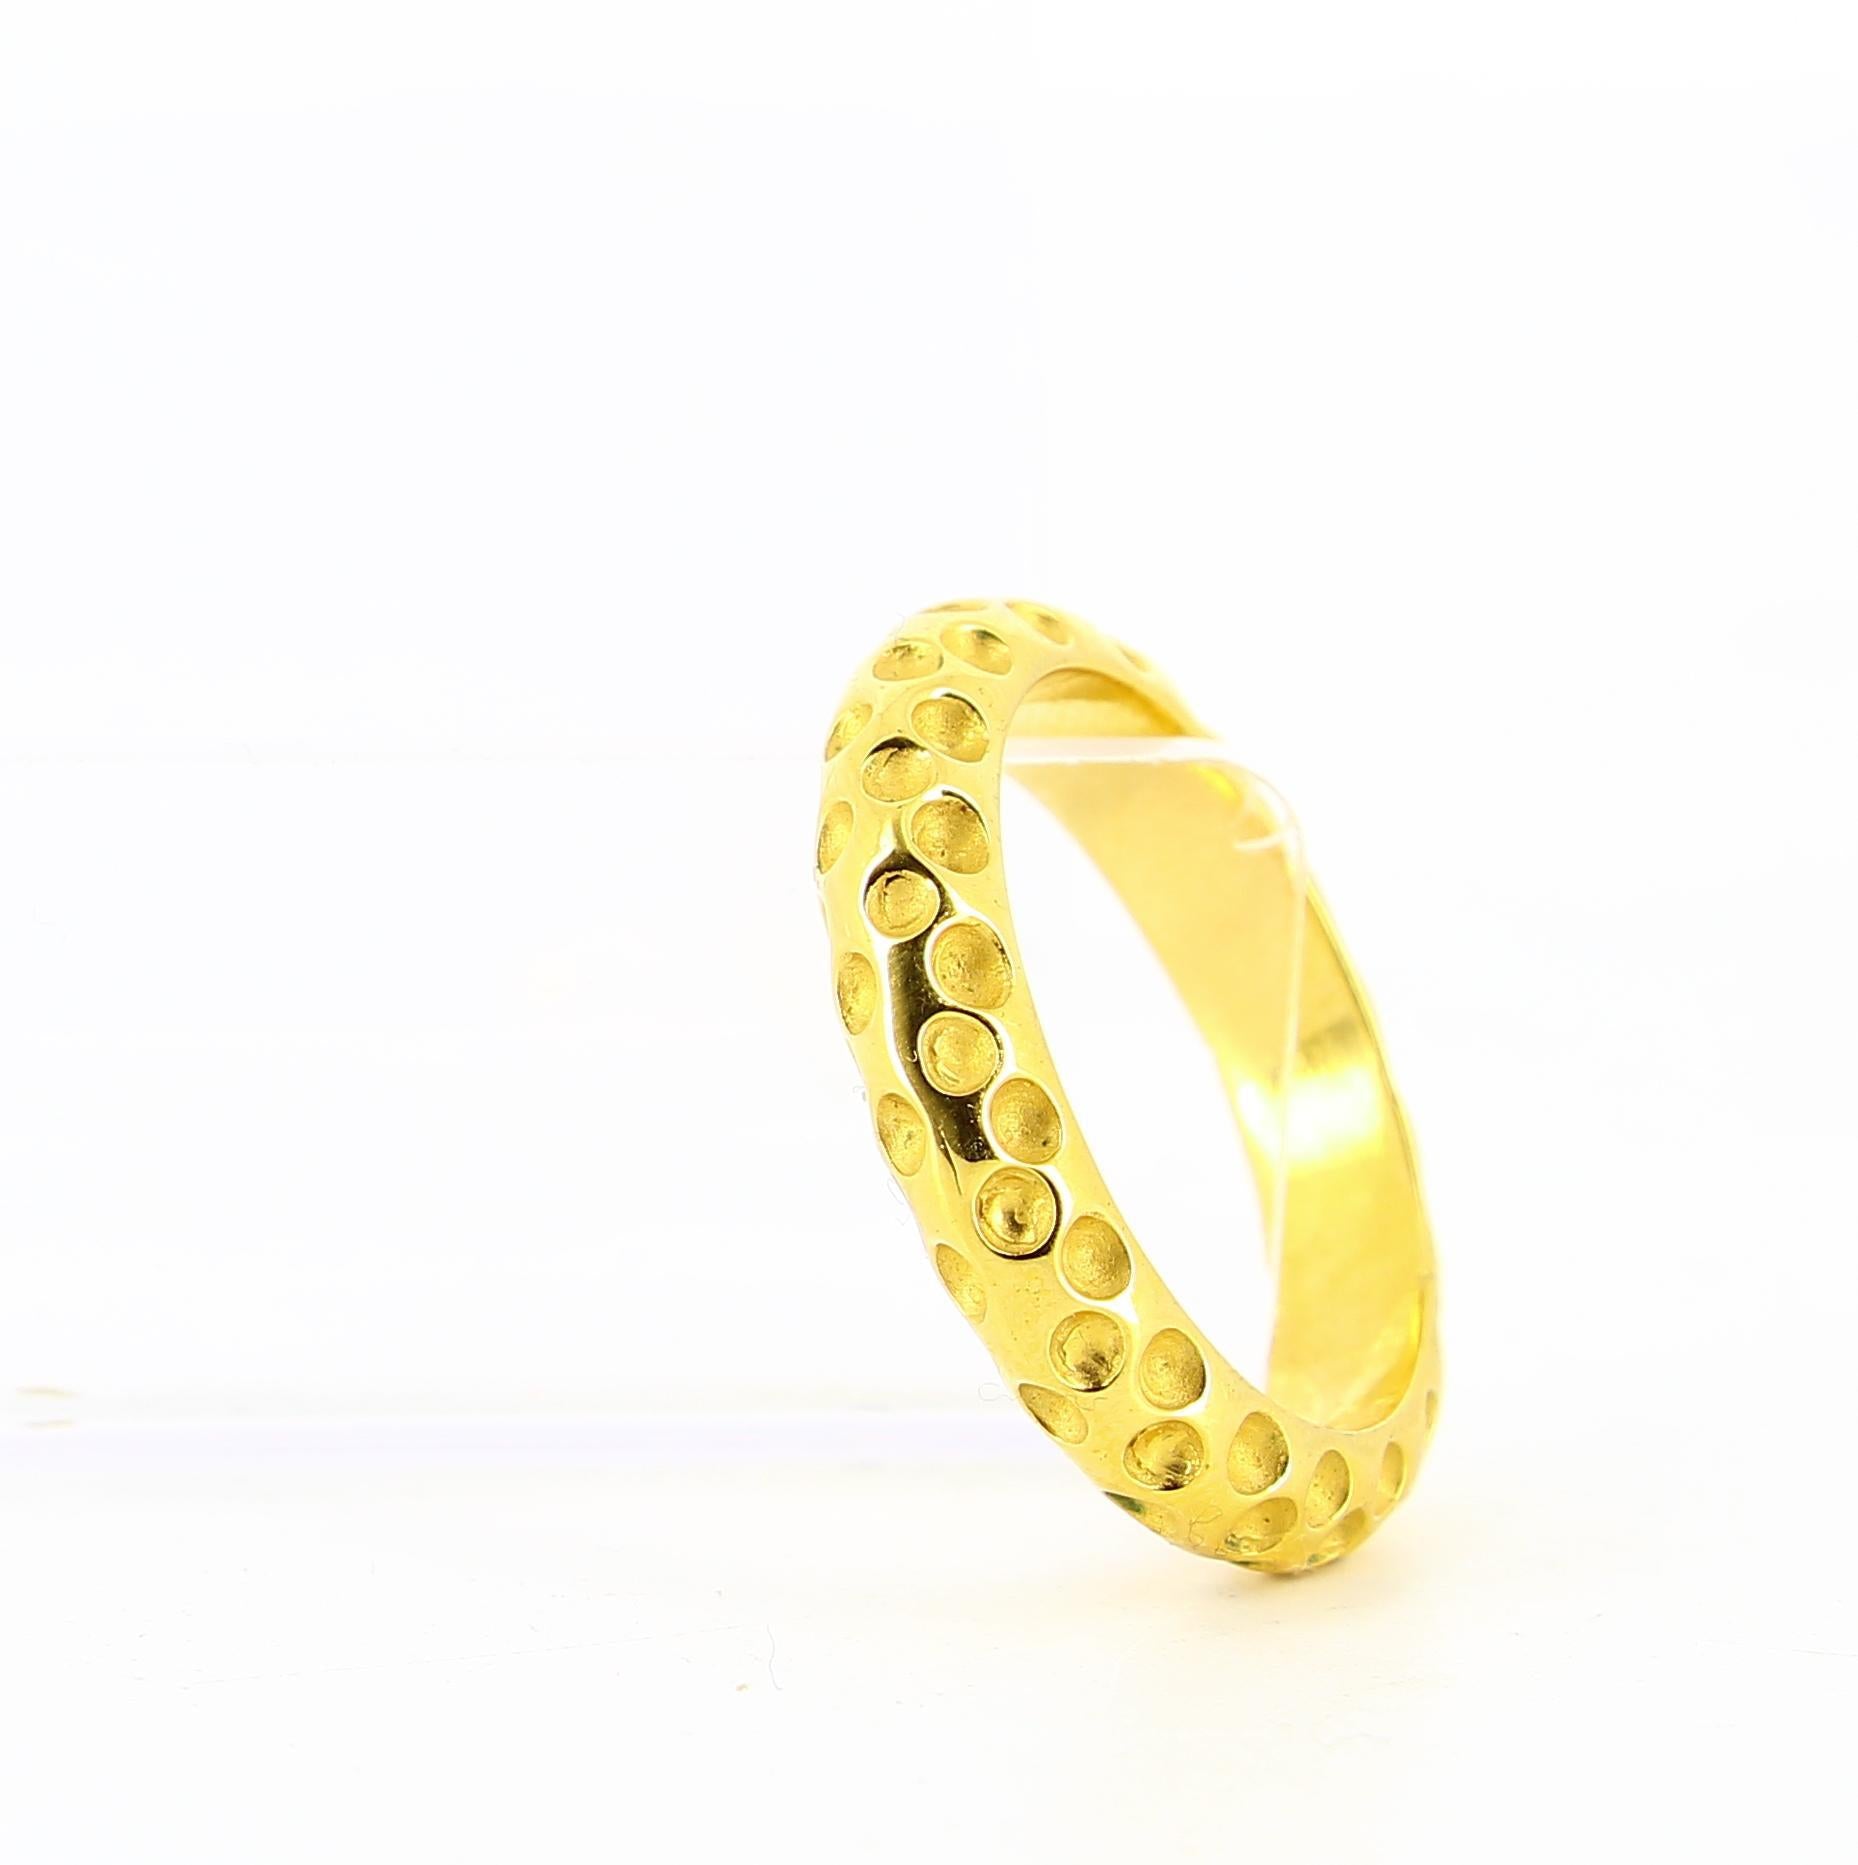 Image of Hermes golden ring